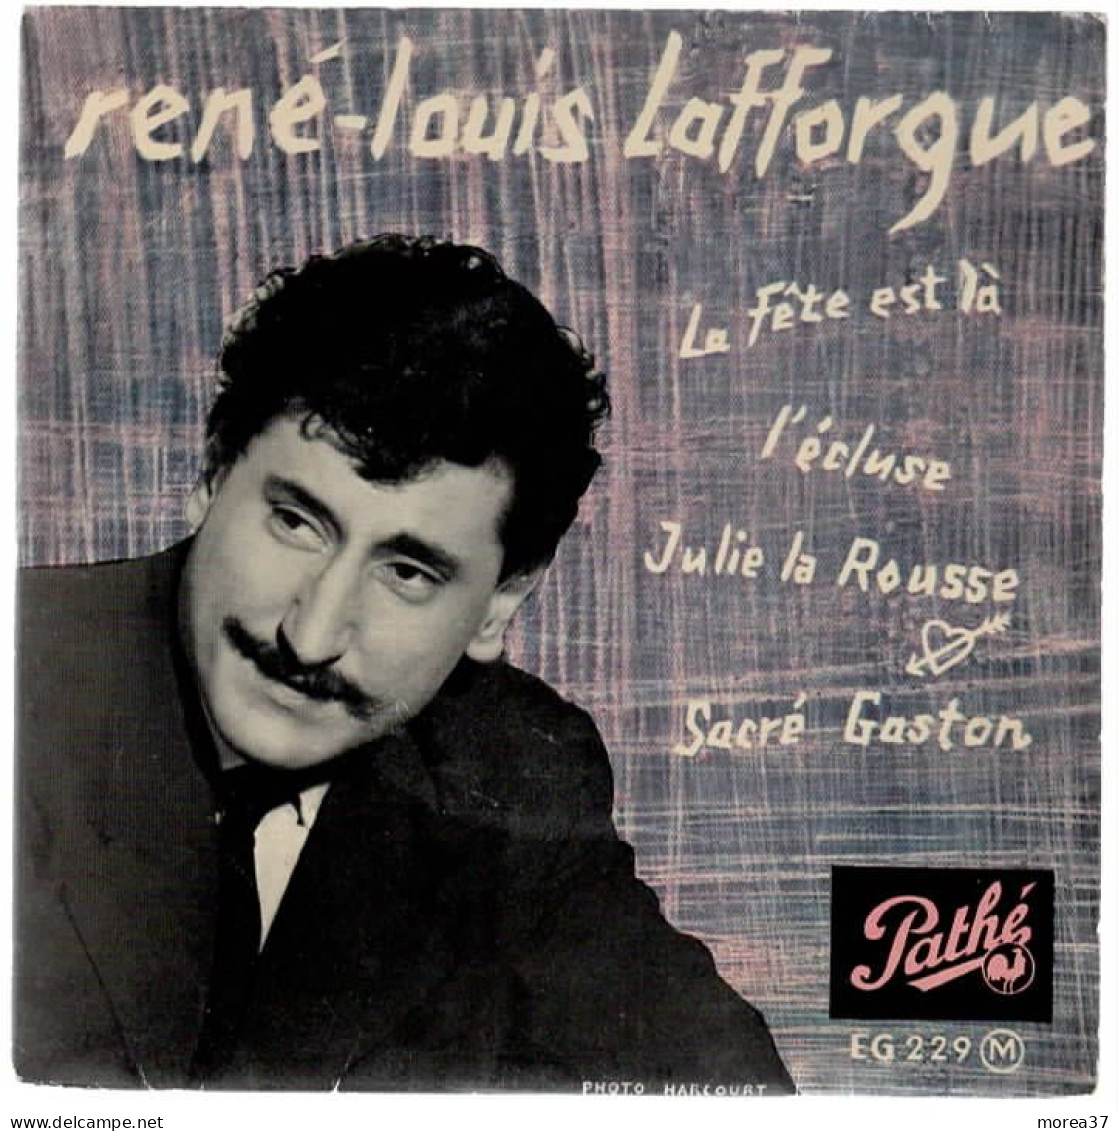 RENE LOUIS LAFFORGUE   La Fête Est La    PATHE EG 229 M - Autres - Musique Française